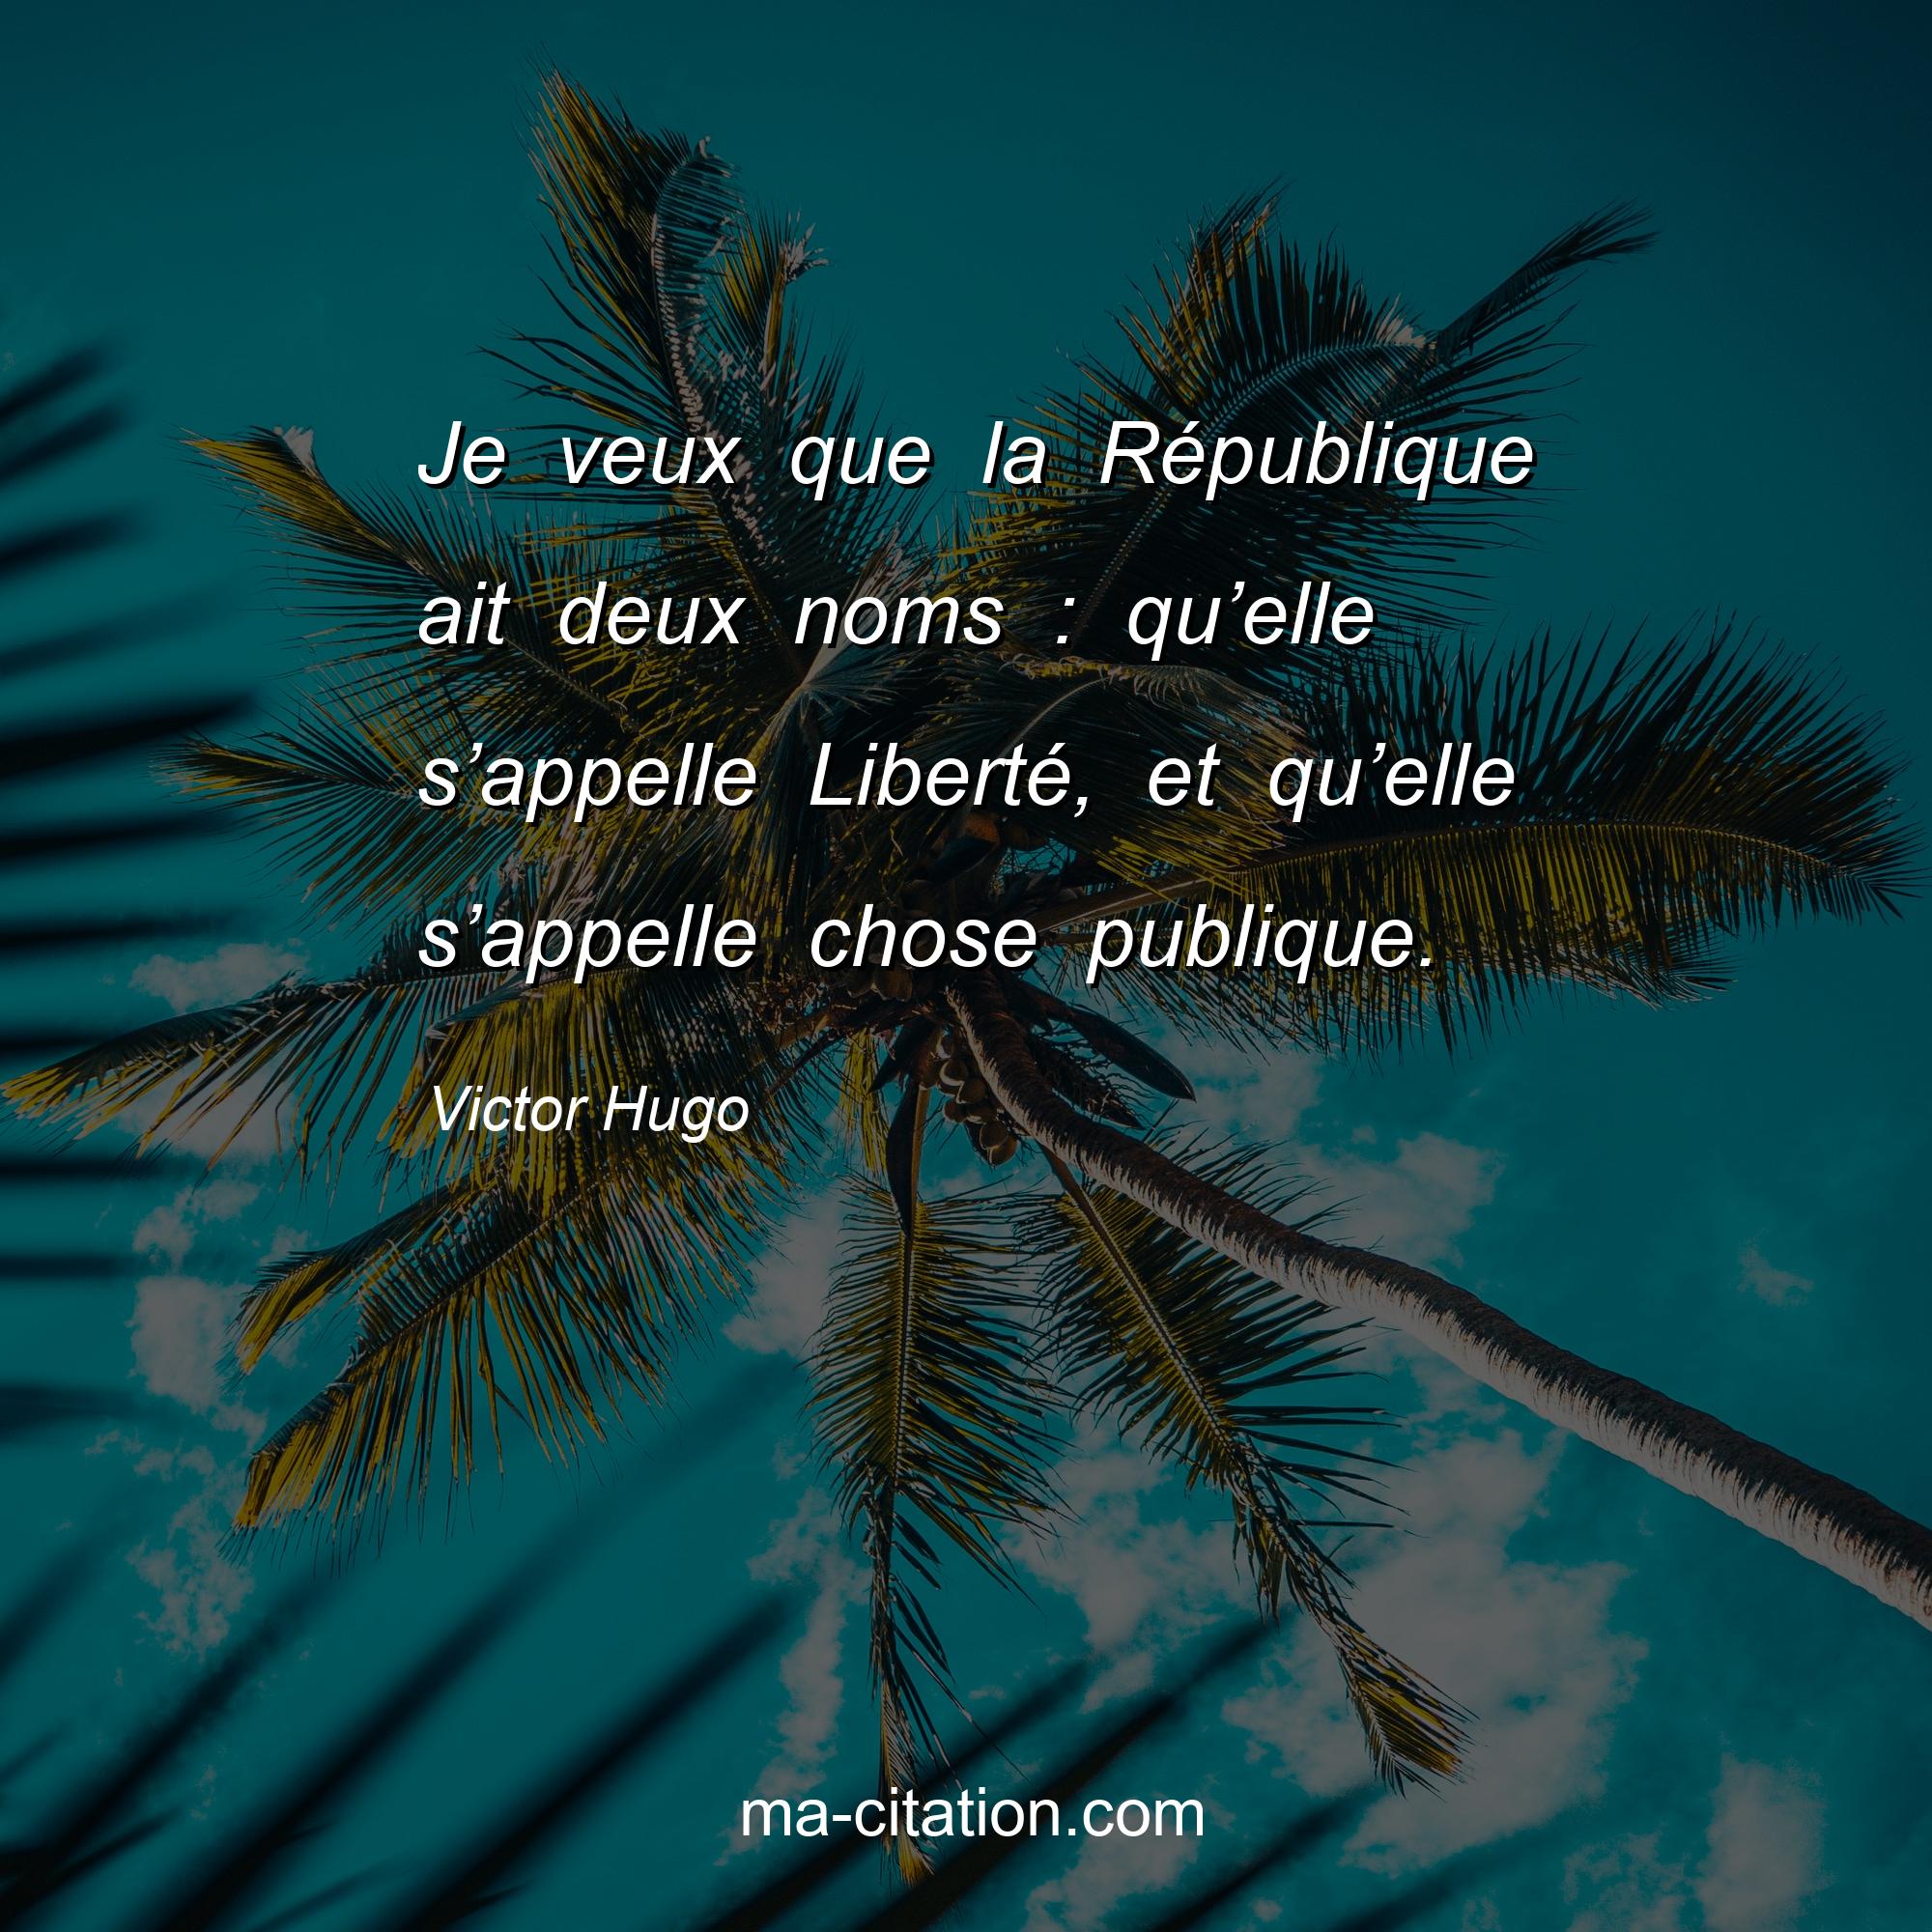 Victor Hugo : Je veux que la République ait deux noms : qu’elle s’appelle Liberté, et qu’elle s’appelle chose publique.